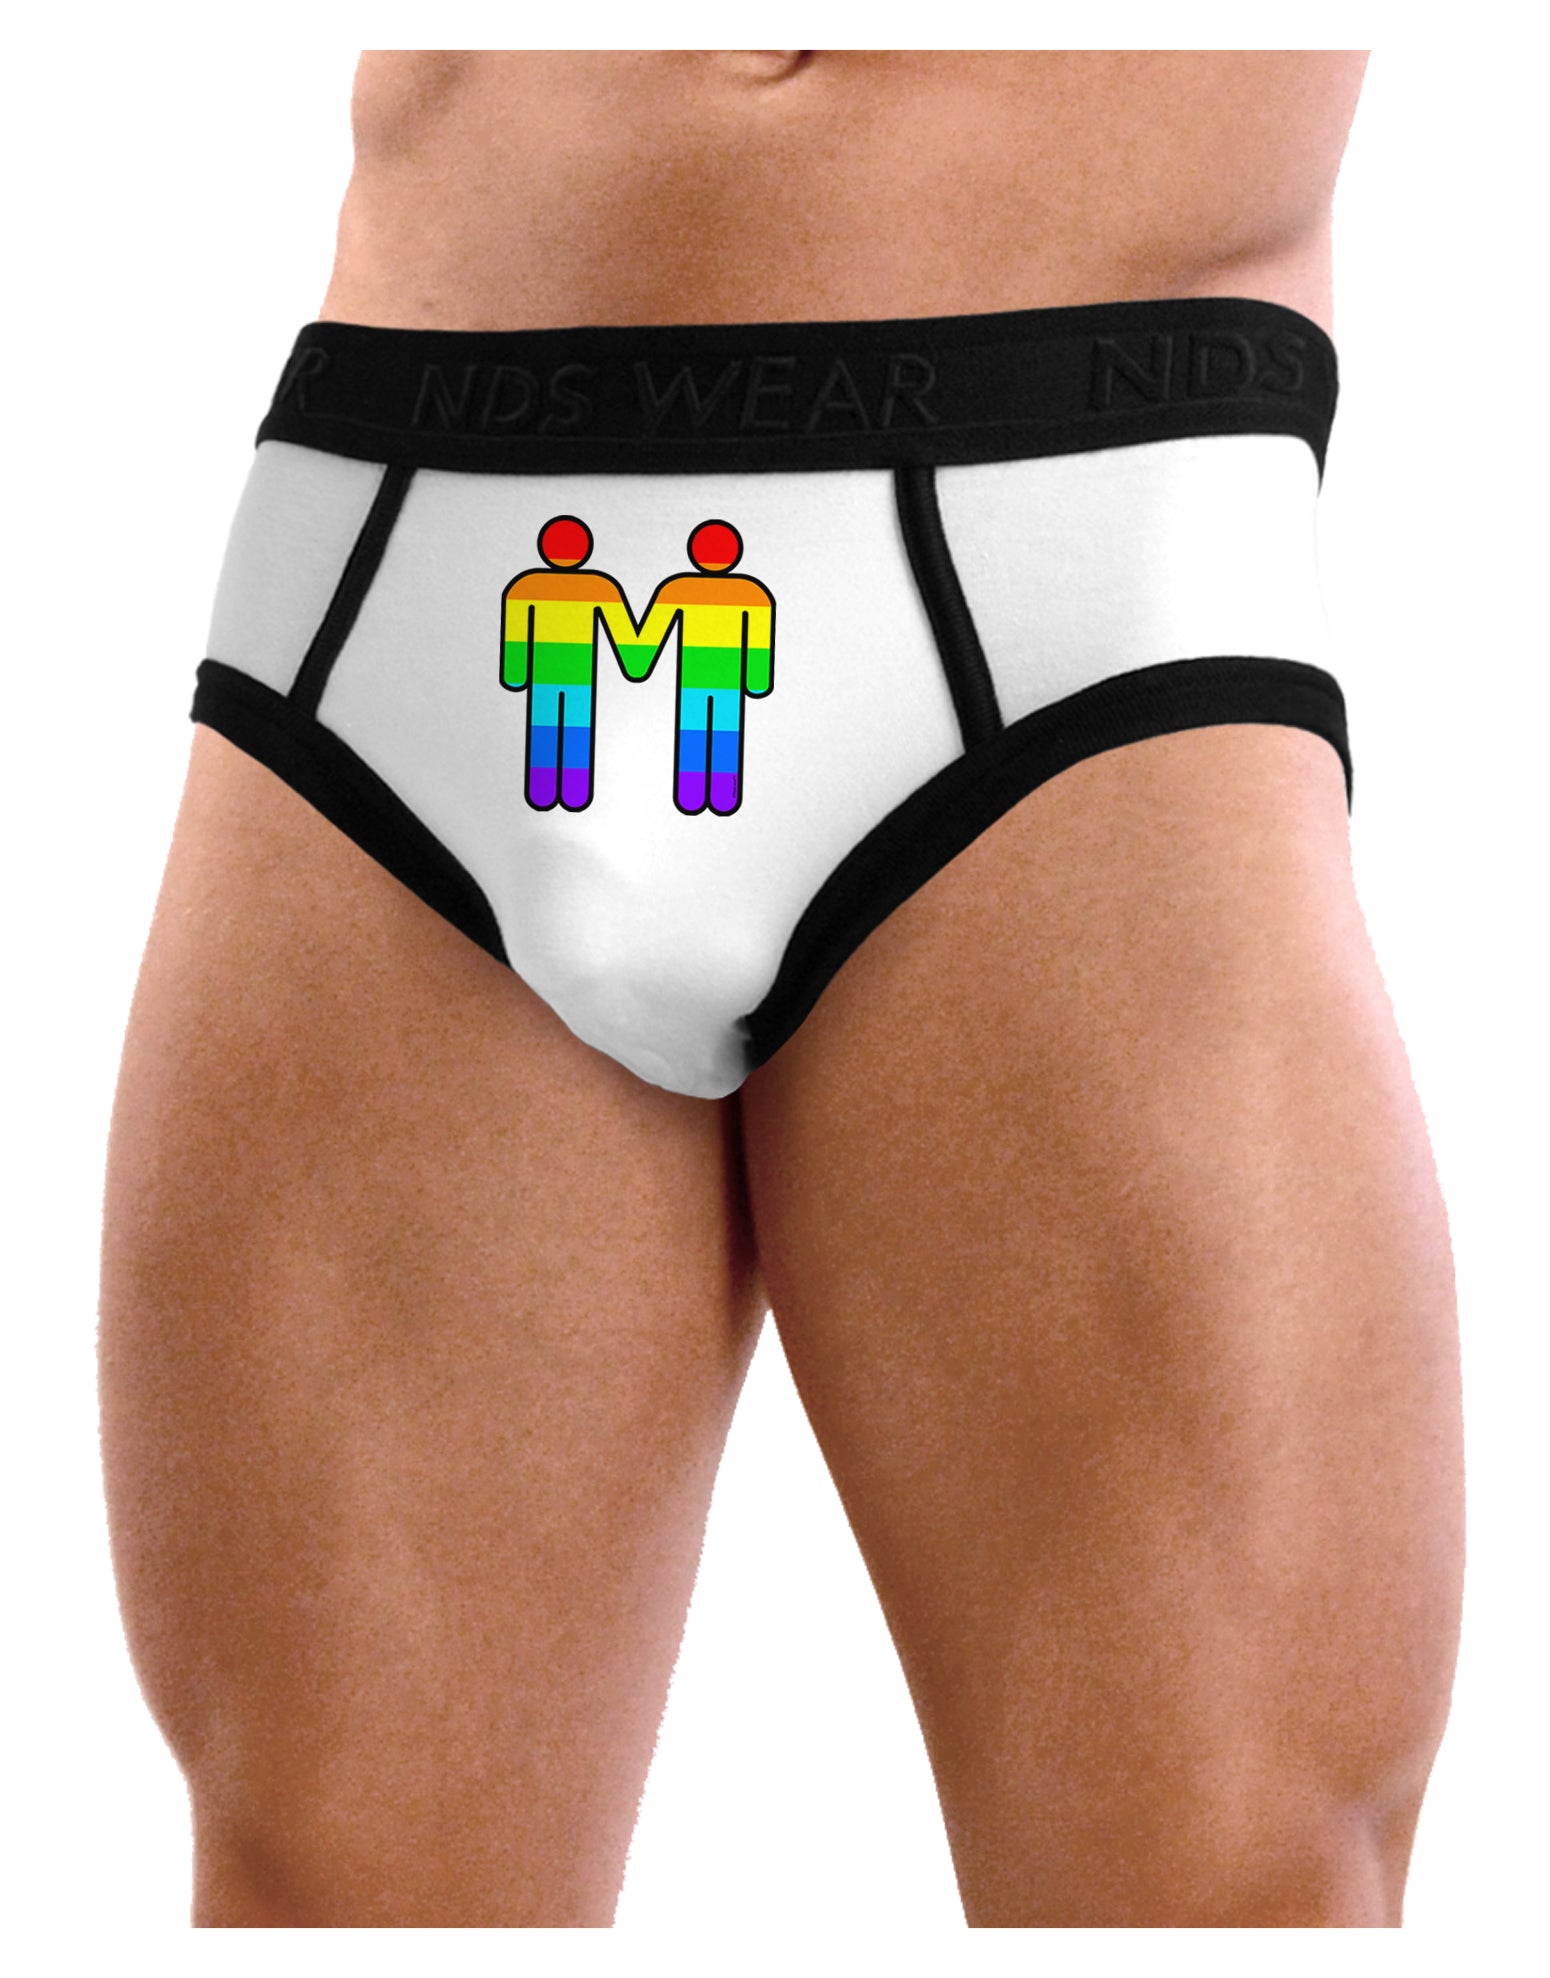 Rainbow Gay Men Holding Hands Mens NDS Wear Briefs Underwear